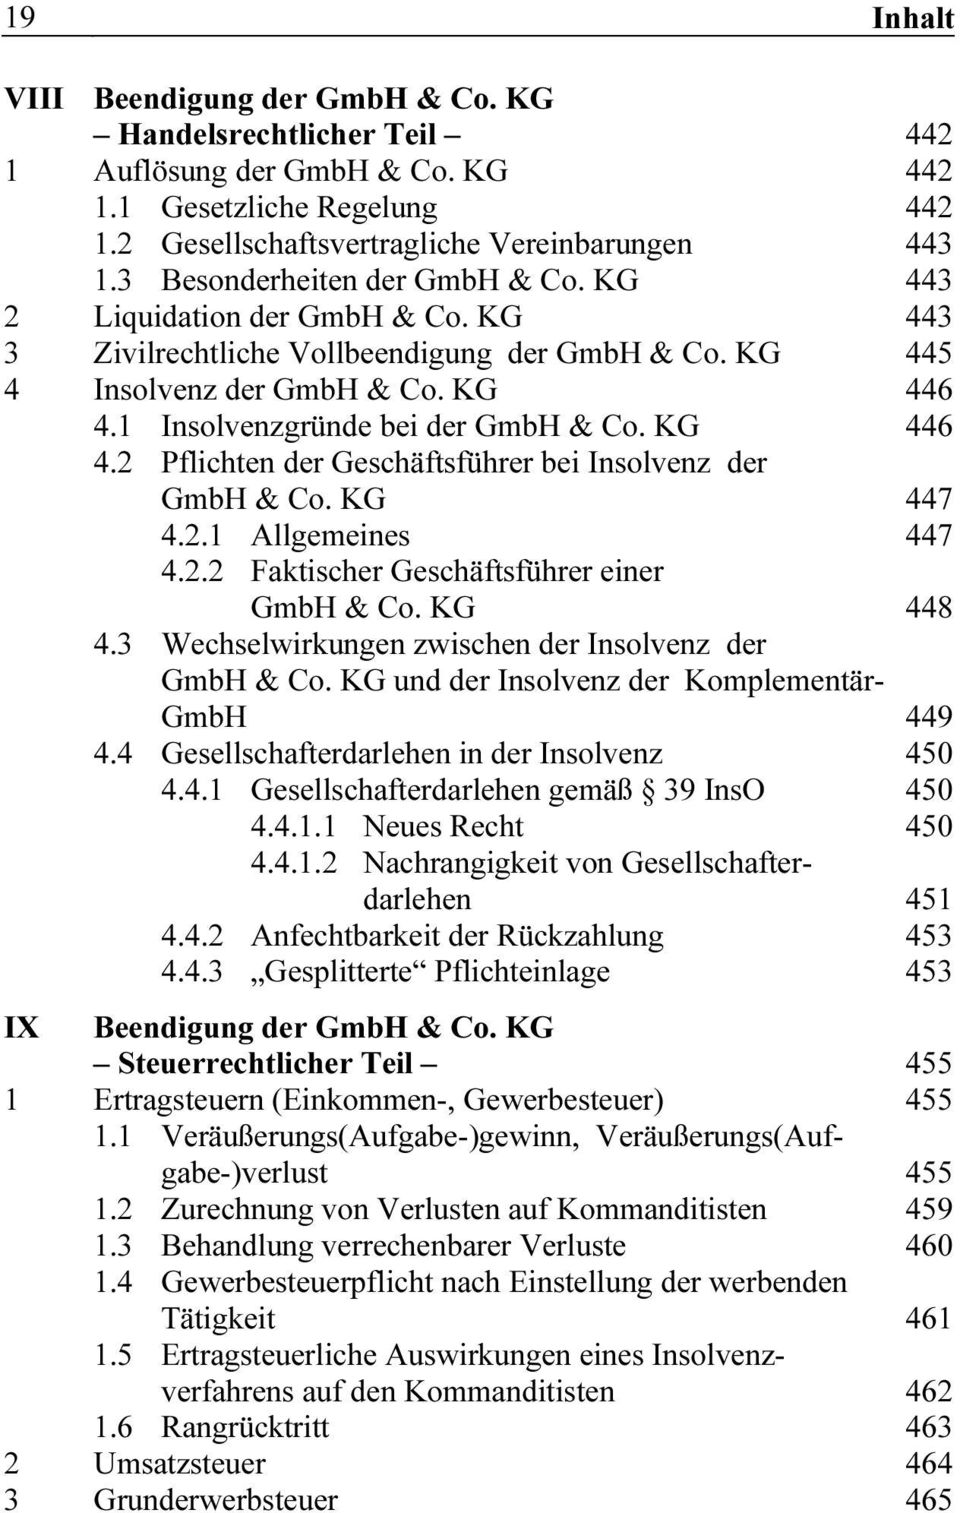 1 Insolvenzgründe bei der GmbH & Co. KG 446 4.2 Pflichten der Geschäftsführer bei Insolvenz der GmbH & Co. KG 447 4.2.1 Allgemeines 447 4.2.2 Faktischer Geschäftsführer einer GmbH & Co. KG 448 4.